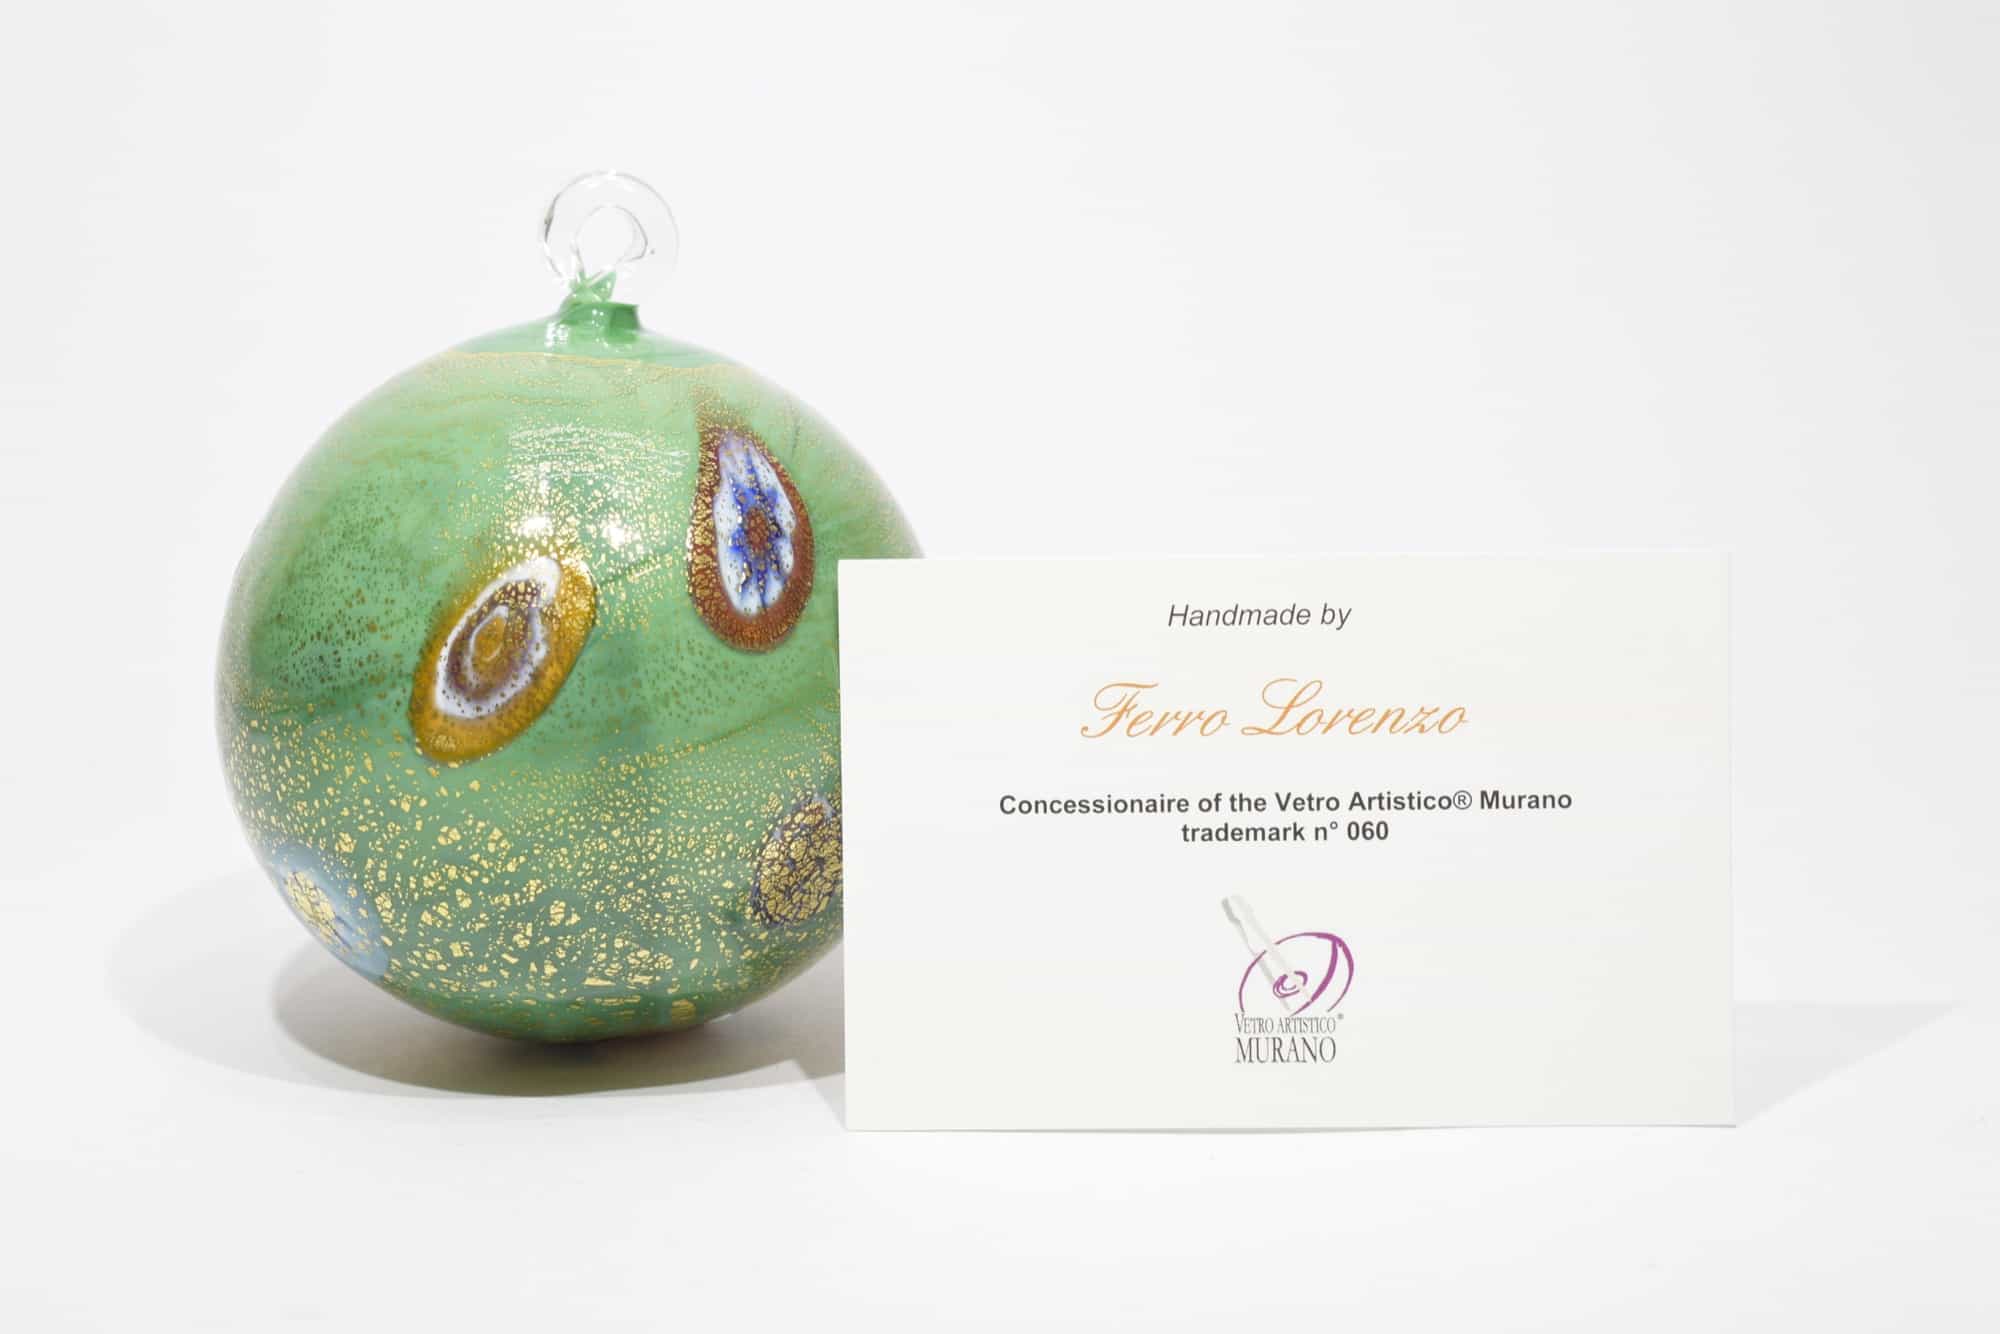 Christmas Ball With Murano Glass Murrine (Art. 10442)